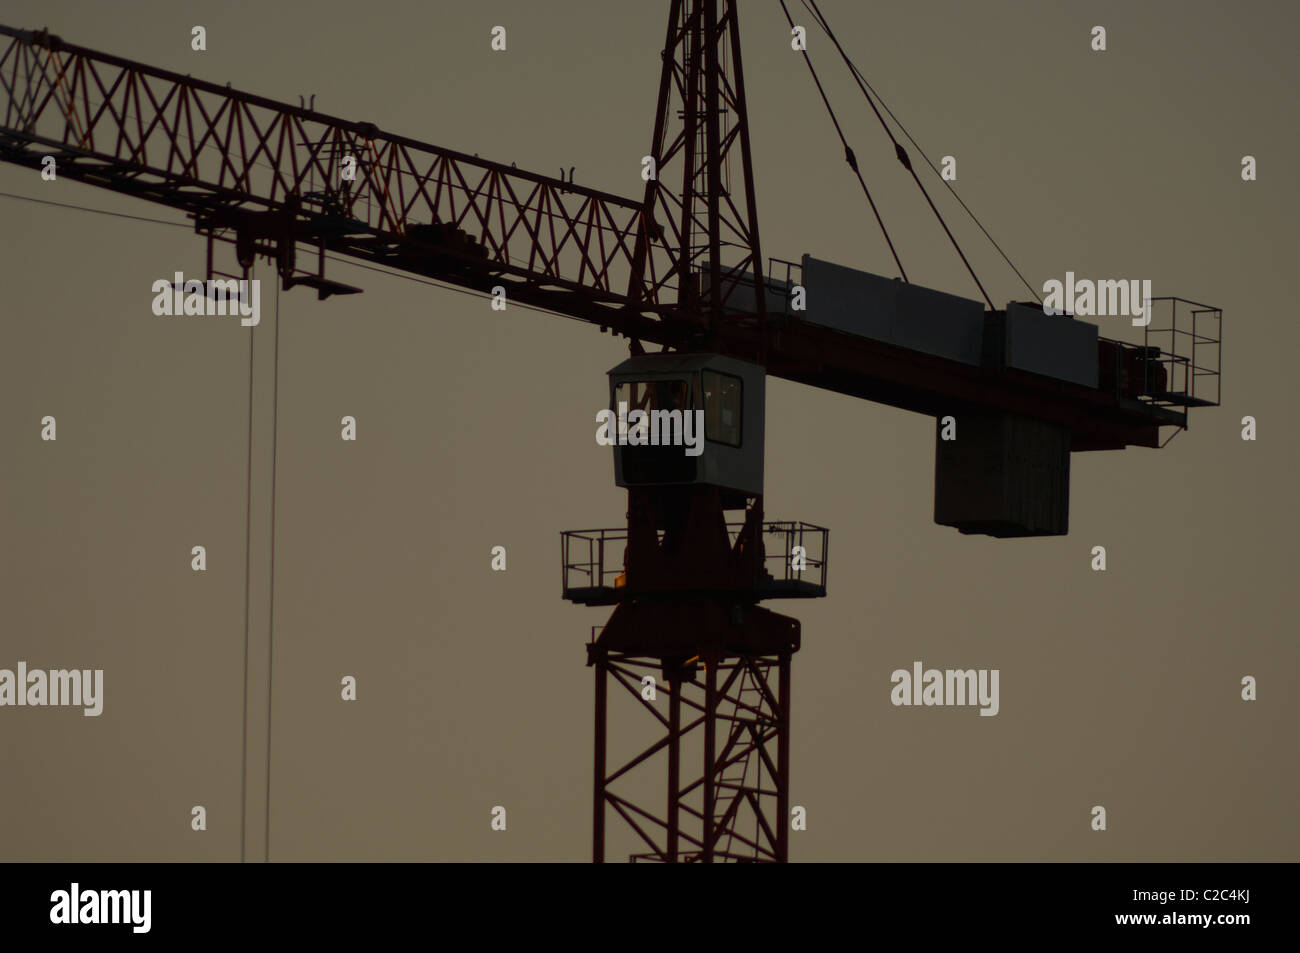 Crane in silhouette Stock Photo